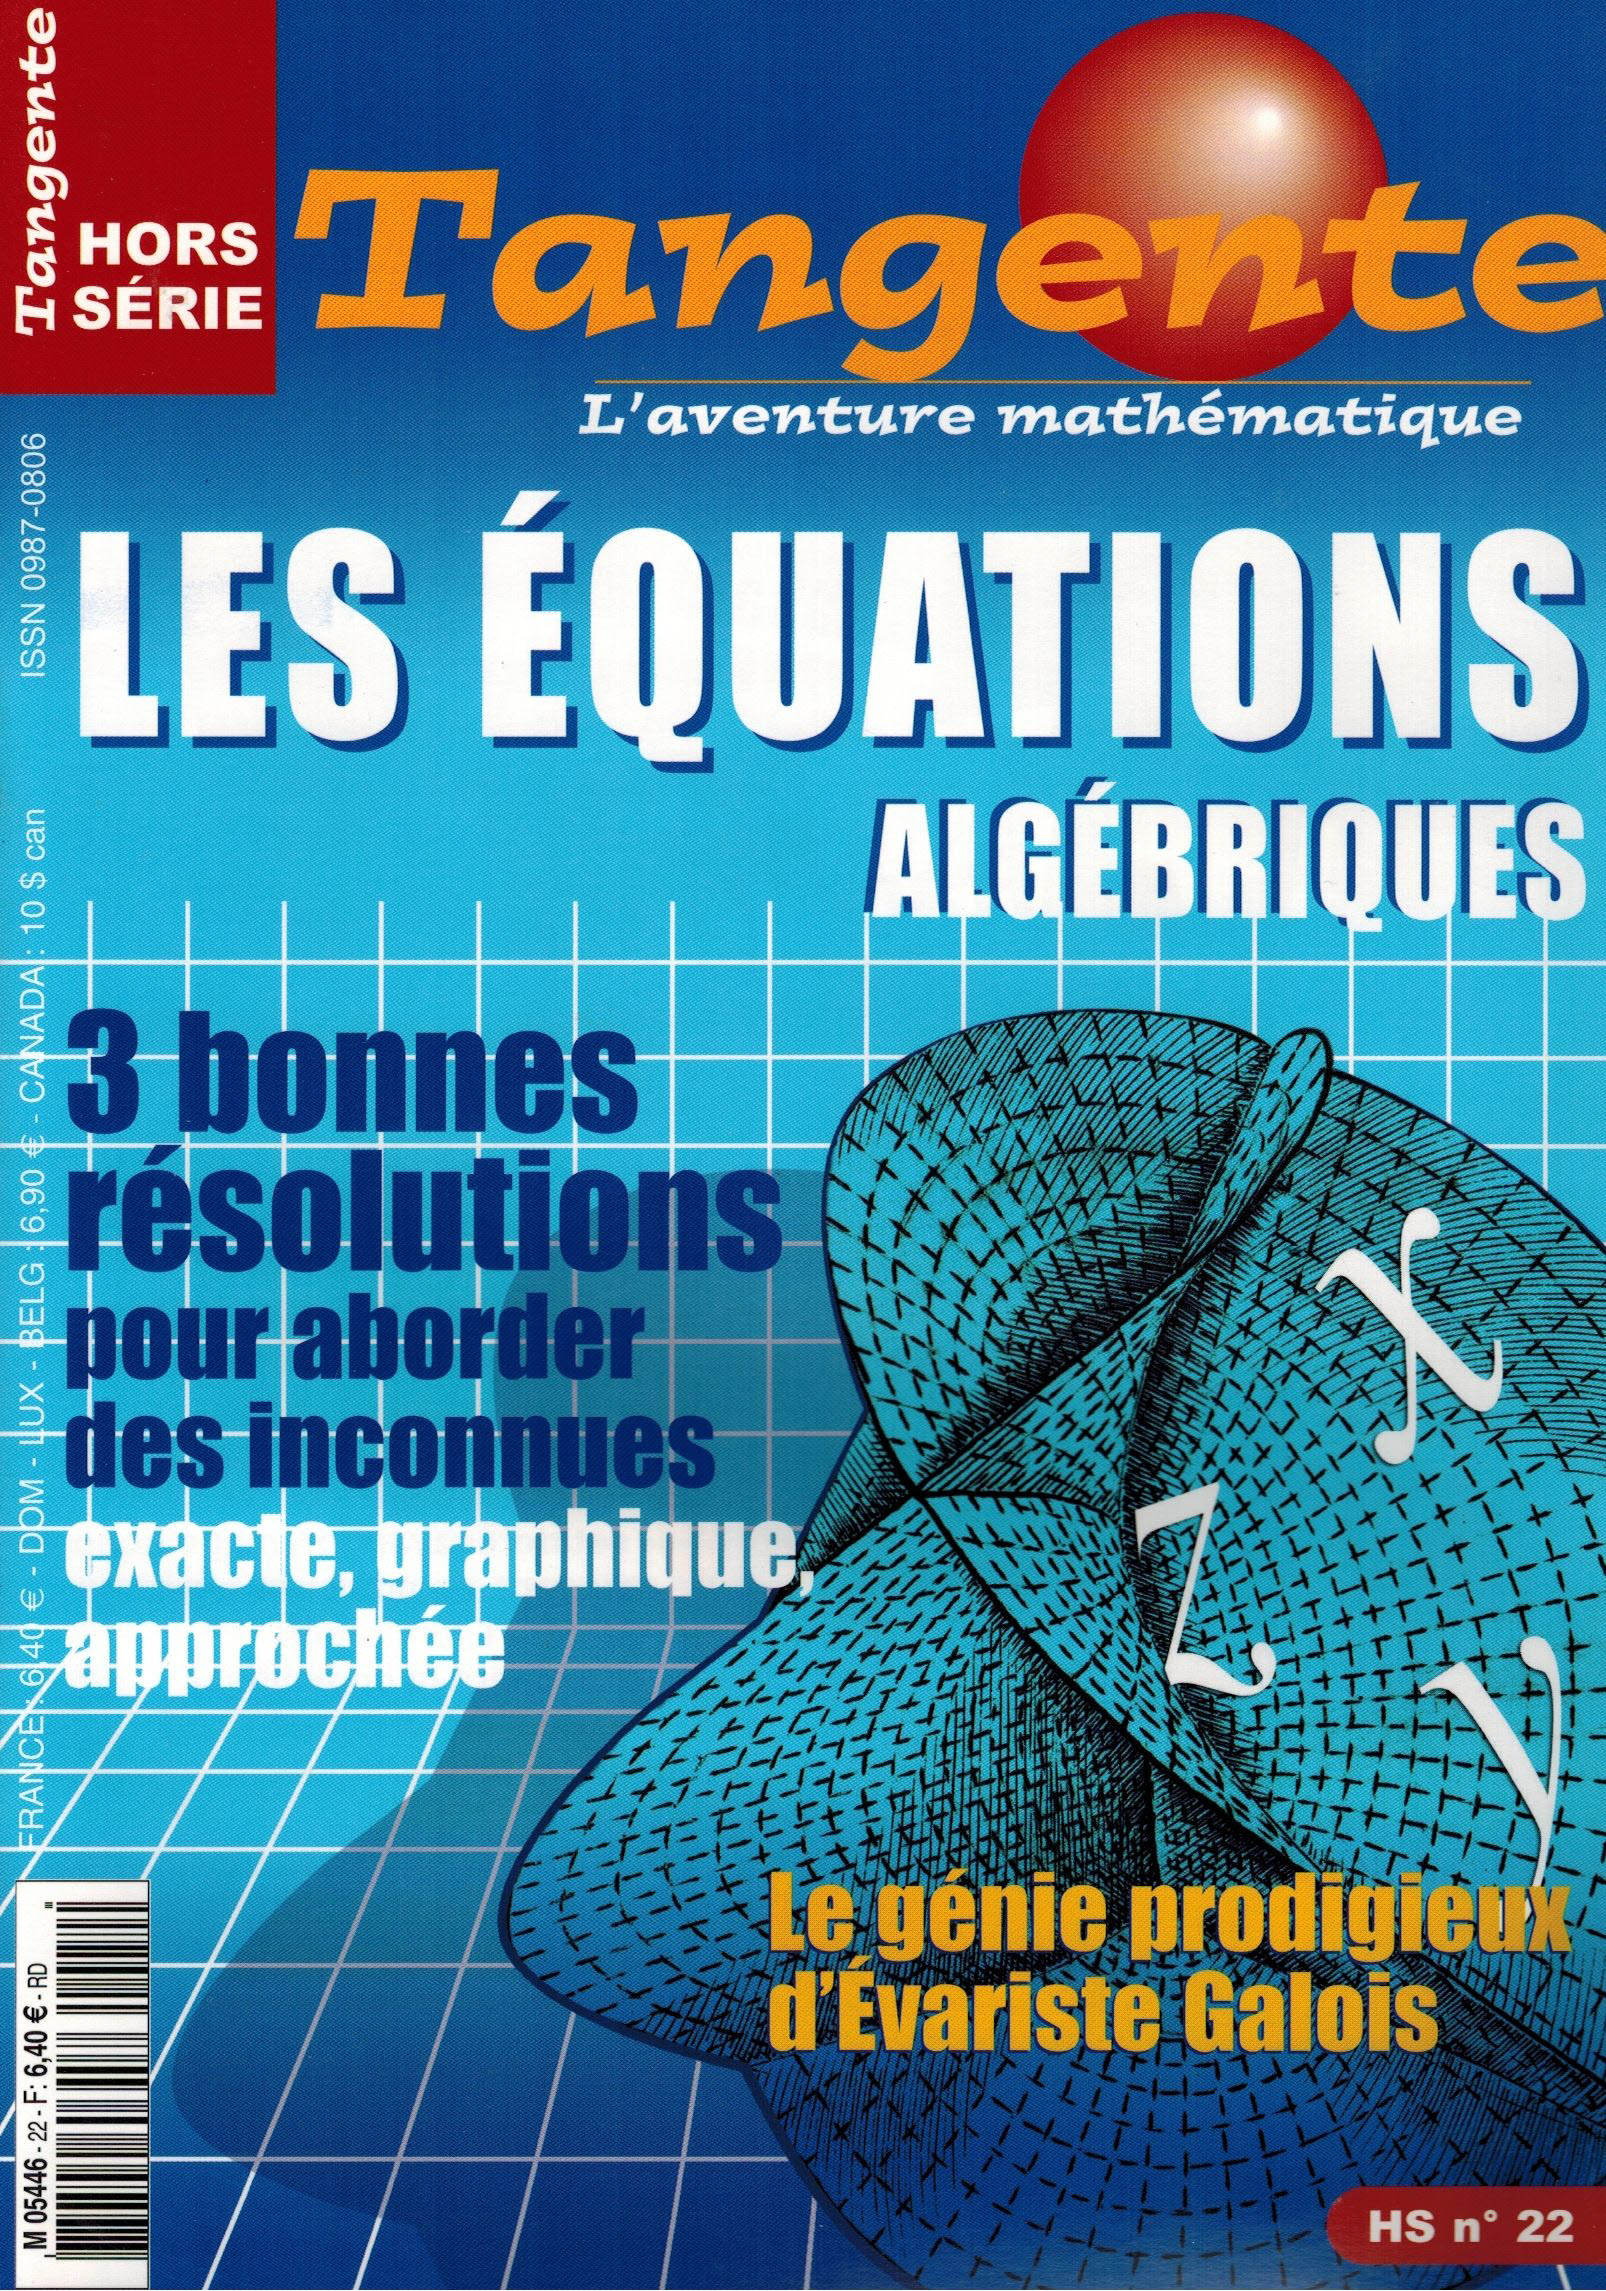 image Hs K 22 - Équations algébriques